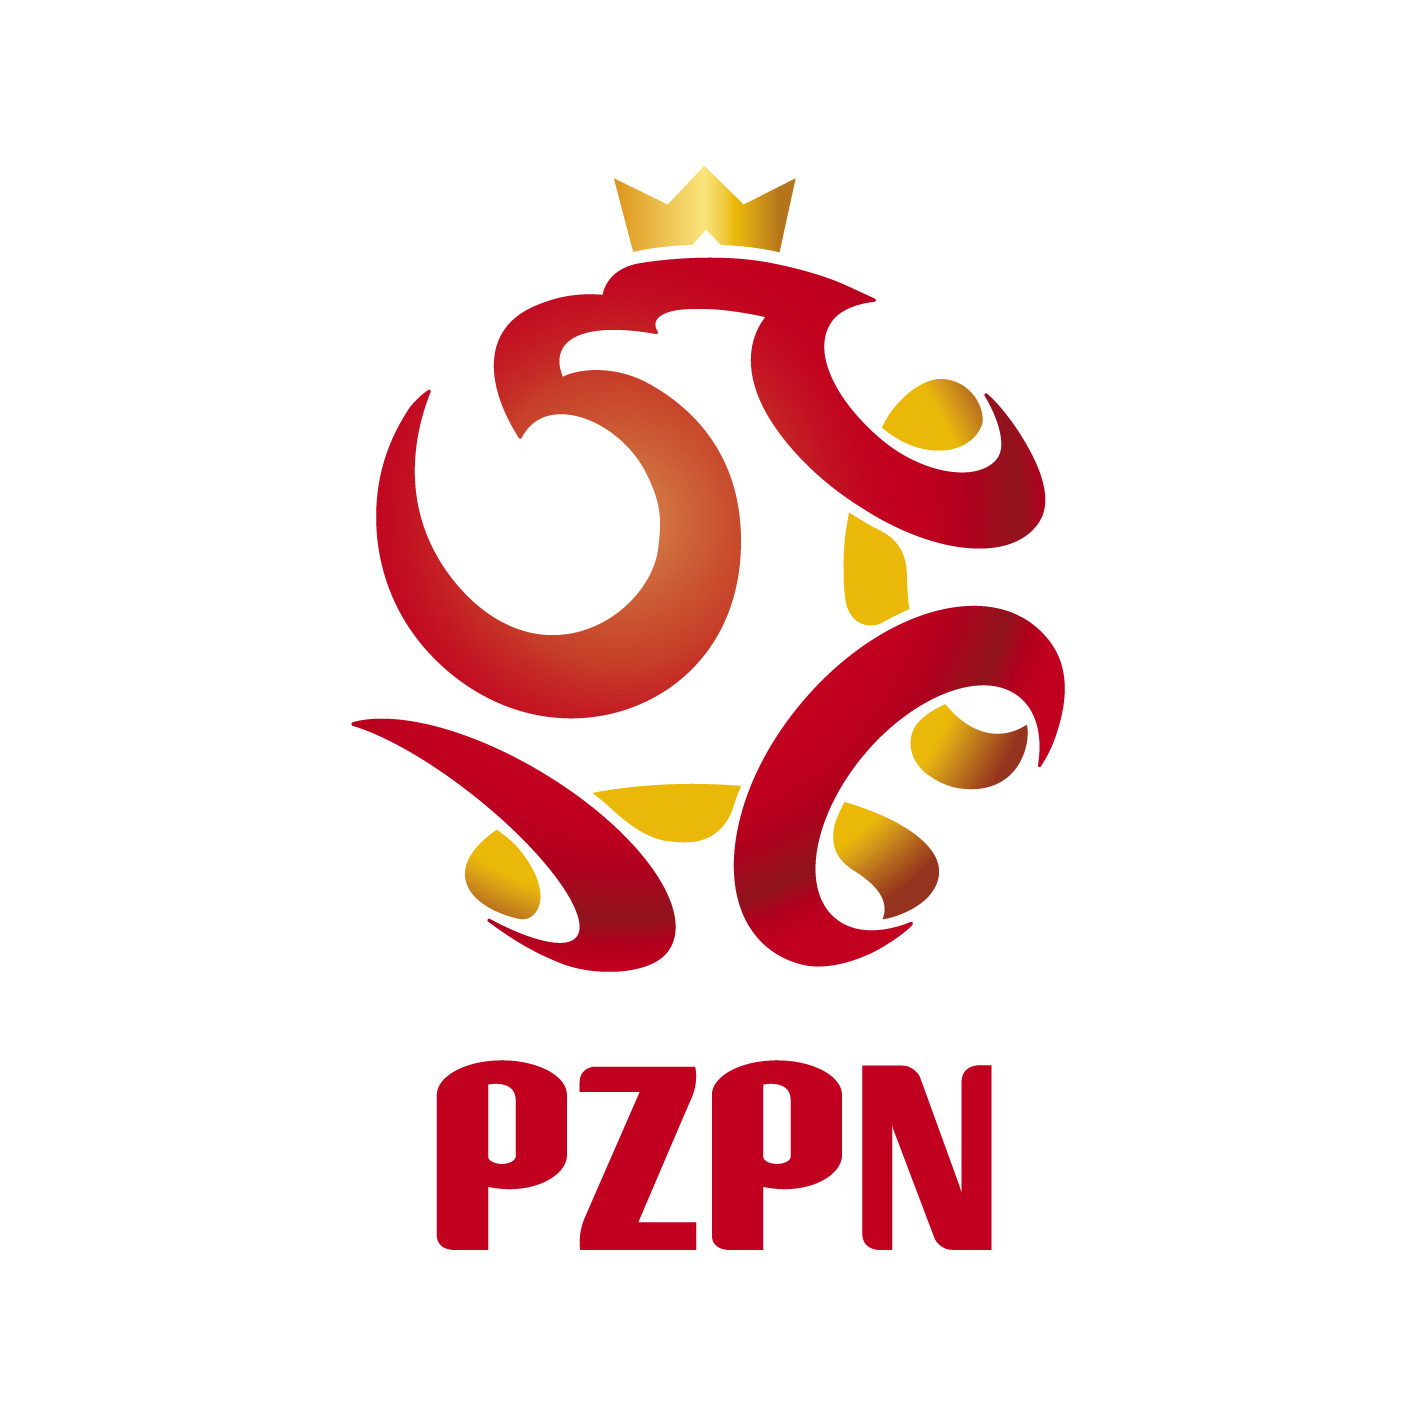 Logo_PZPN